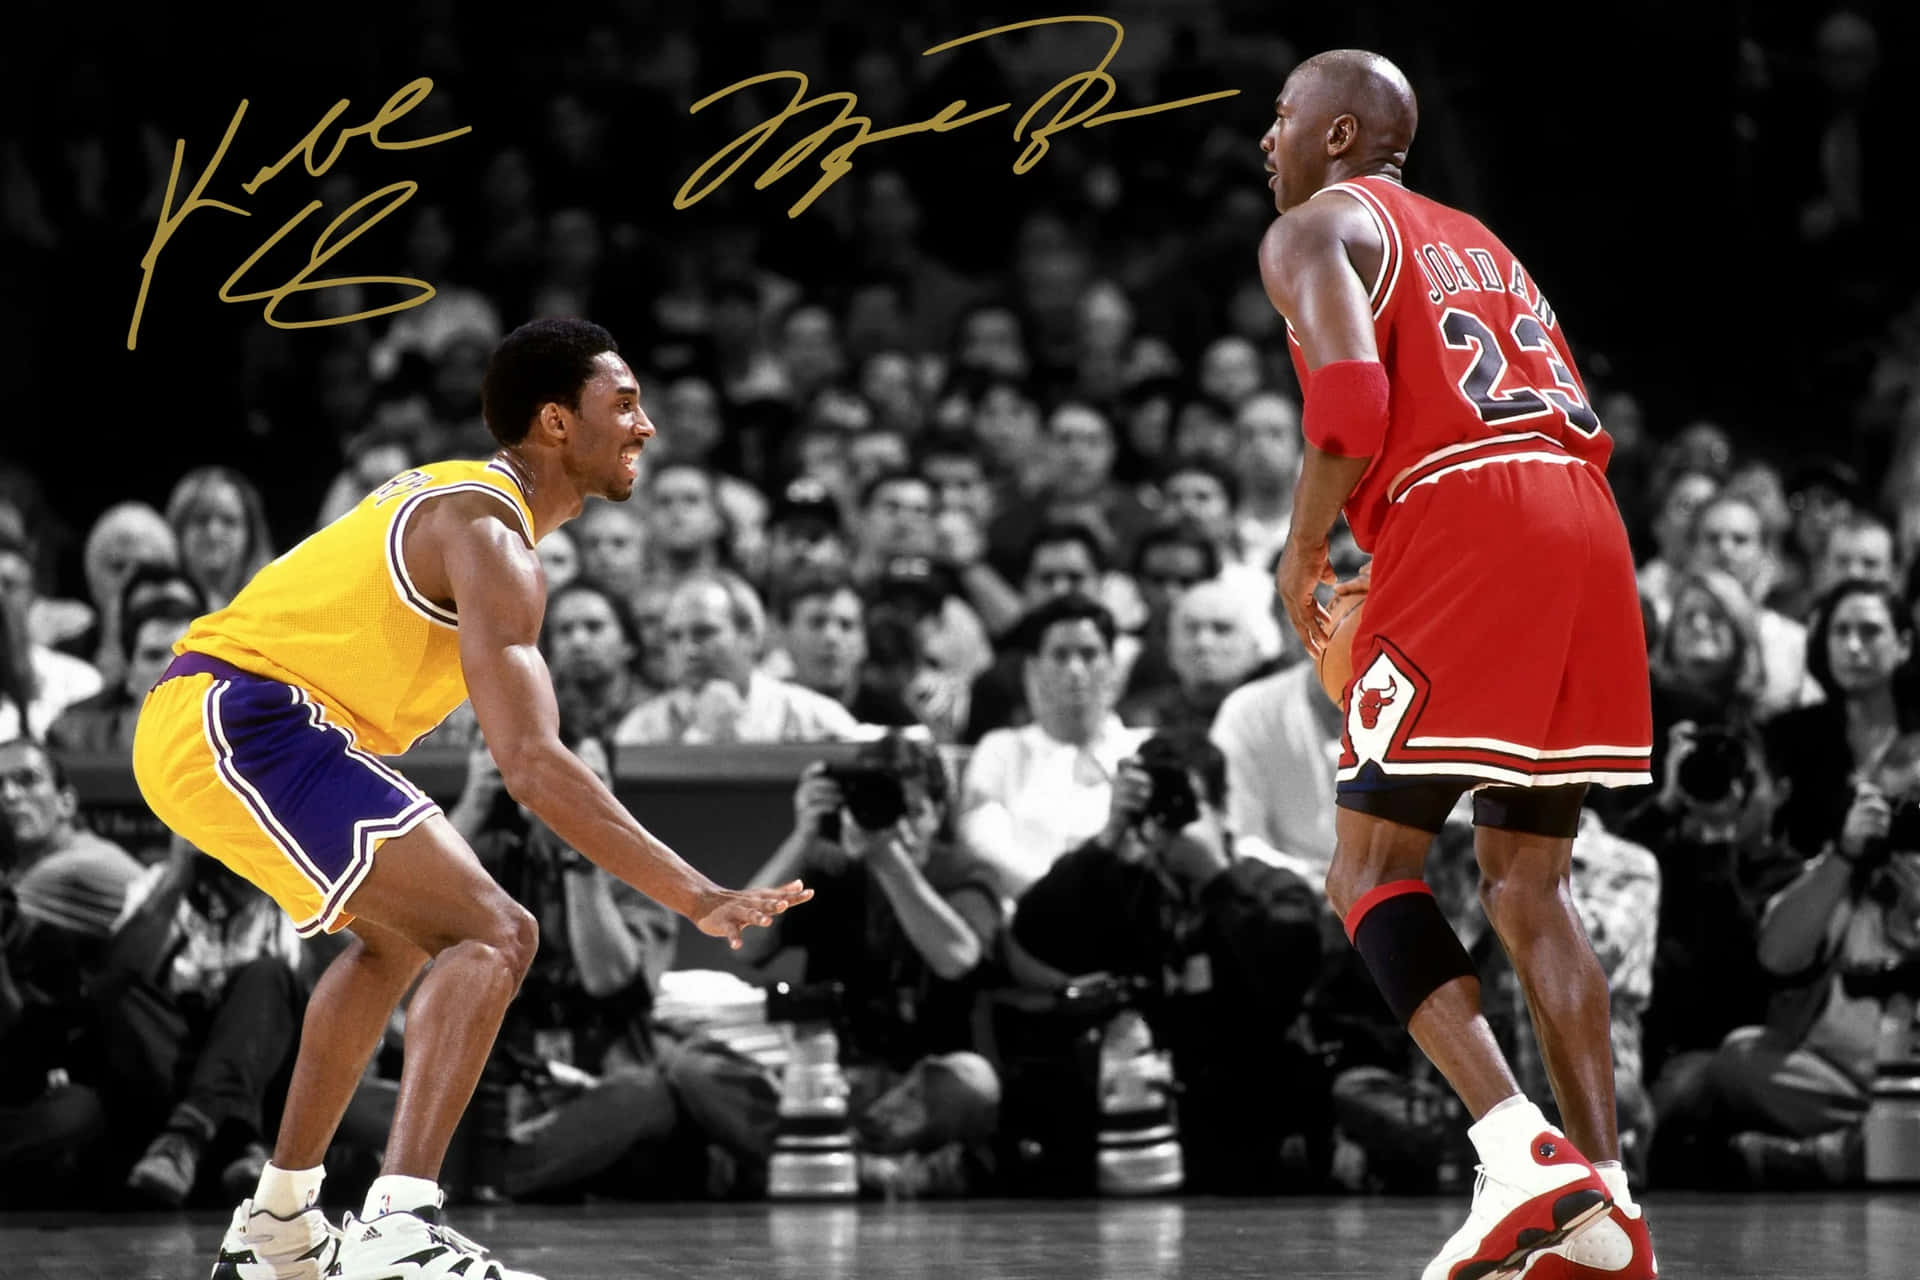 100+] Kobe Bryant And Michael Jordan Wallpapers